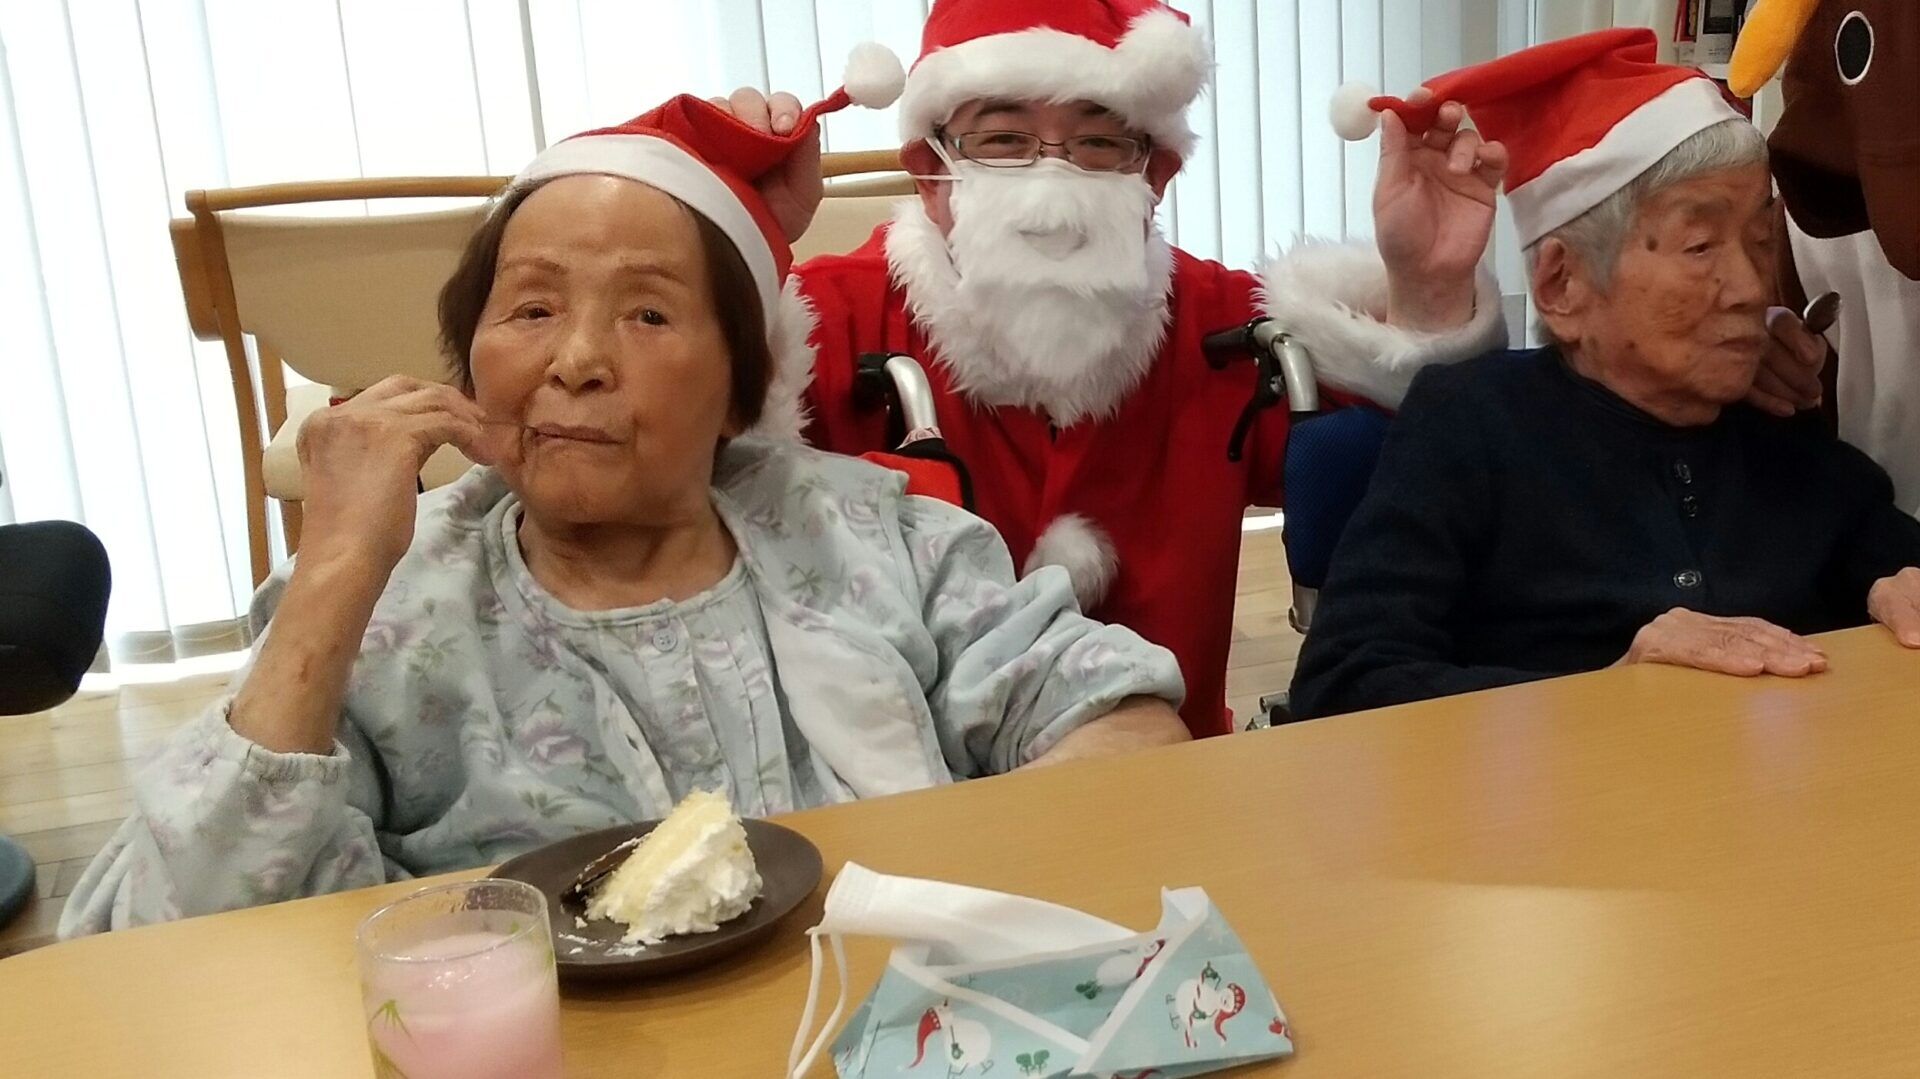 【 看護小規模多機能型居宅介護 】でクリスマス会を行いました